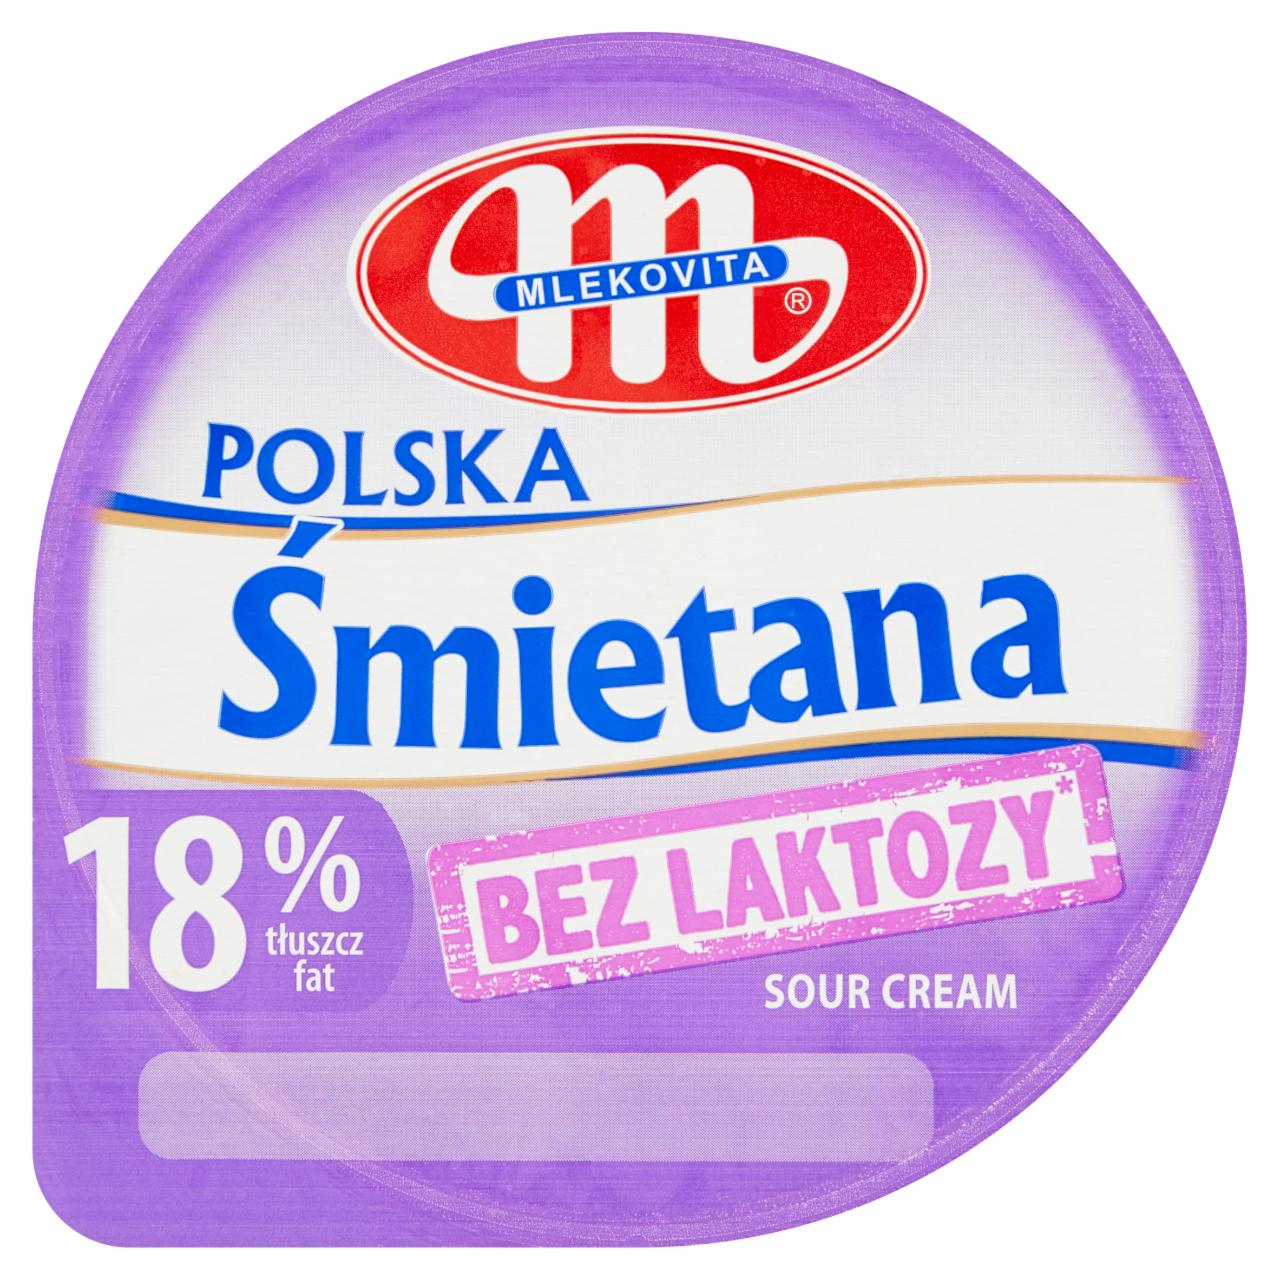 Fotografie - Śmietana Polska 18% bez laktozy Mlekovita